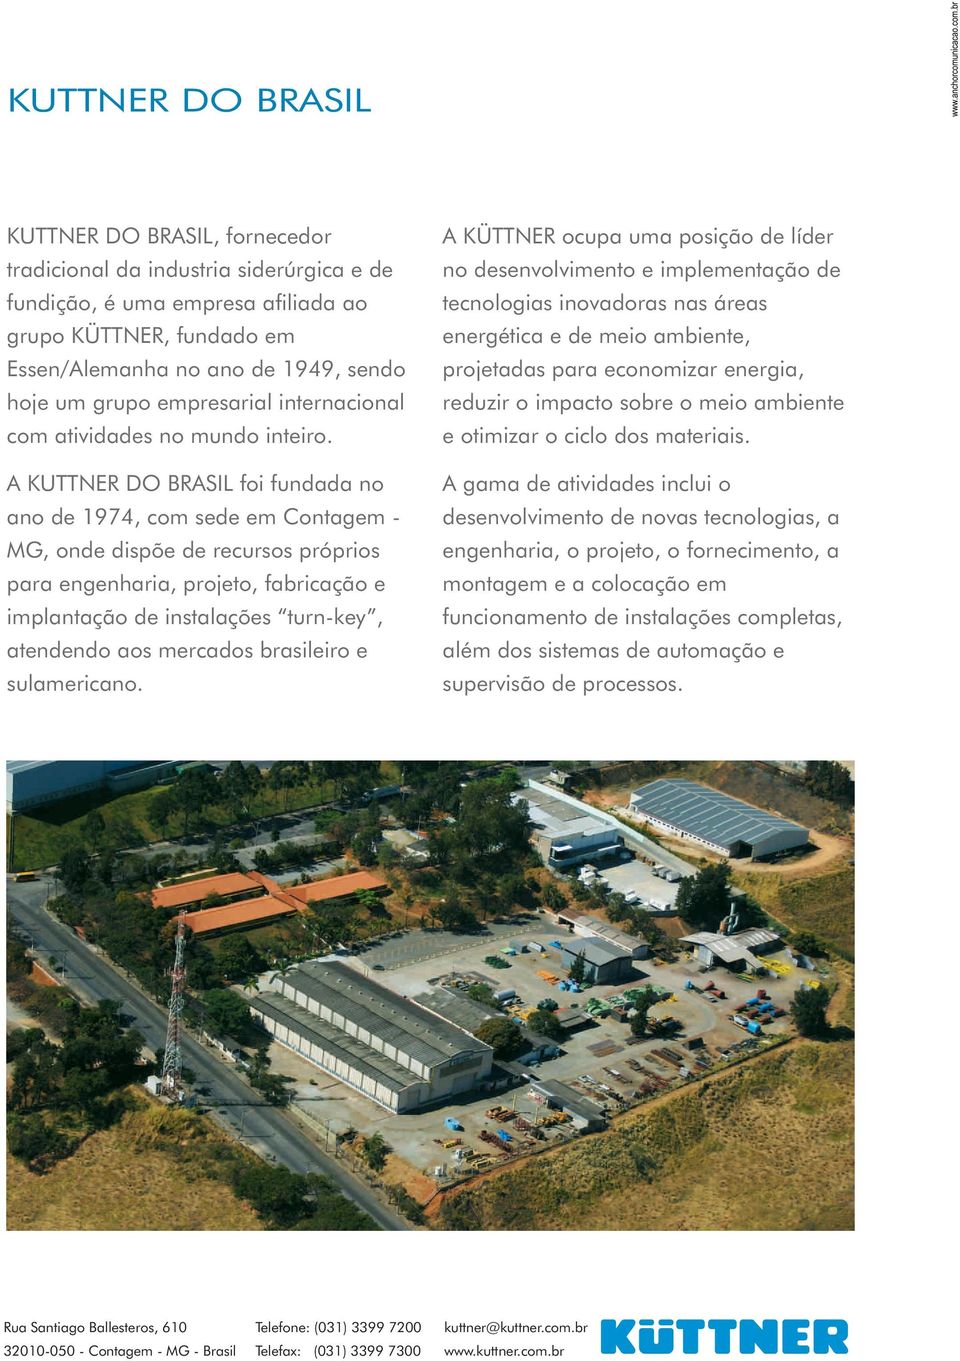 A KUTTNER DO BRASIL foi fundada no ano de 1974, com sede em Contagem - MG, onde dispõe de recursos próprios para engenharia, projeto, fabricação e implantação de instalações turn-key, atendendo aos